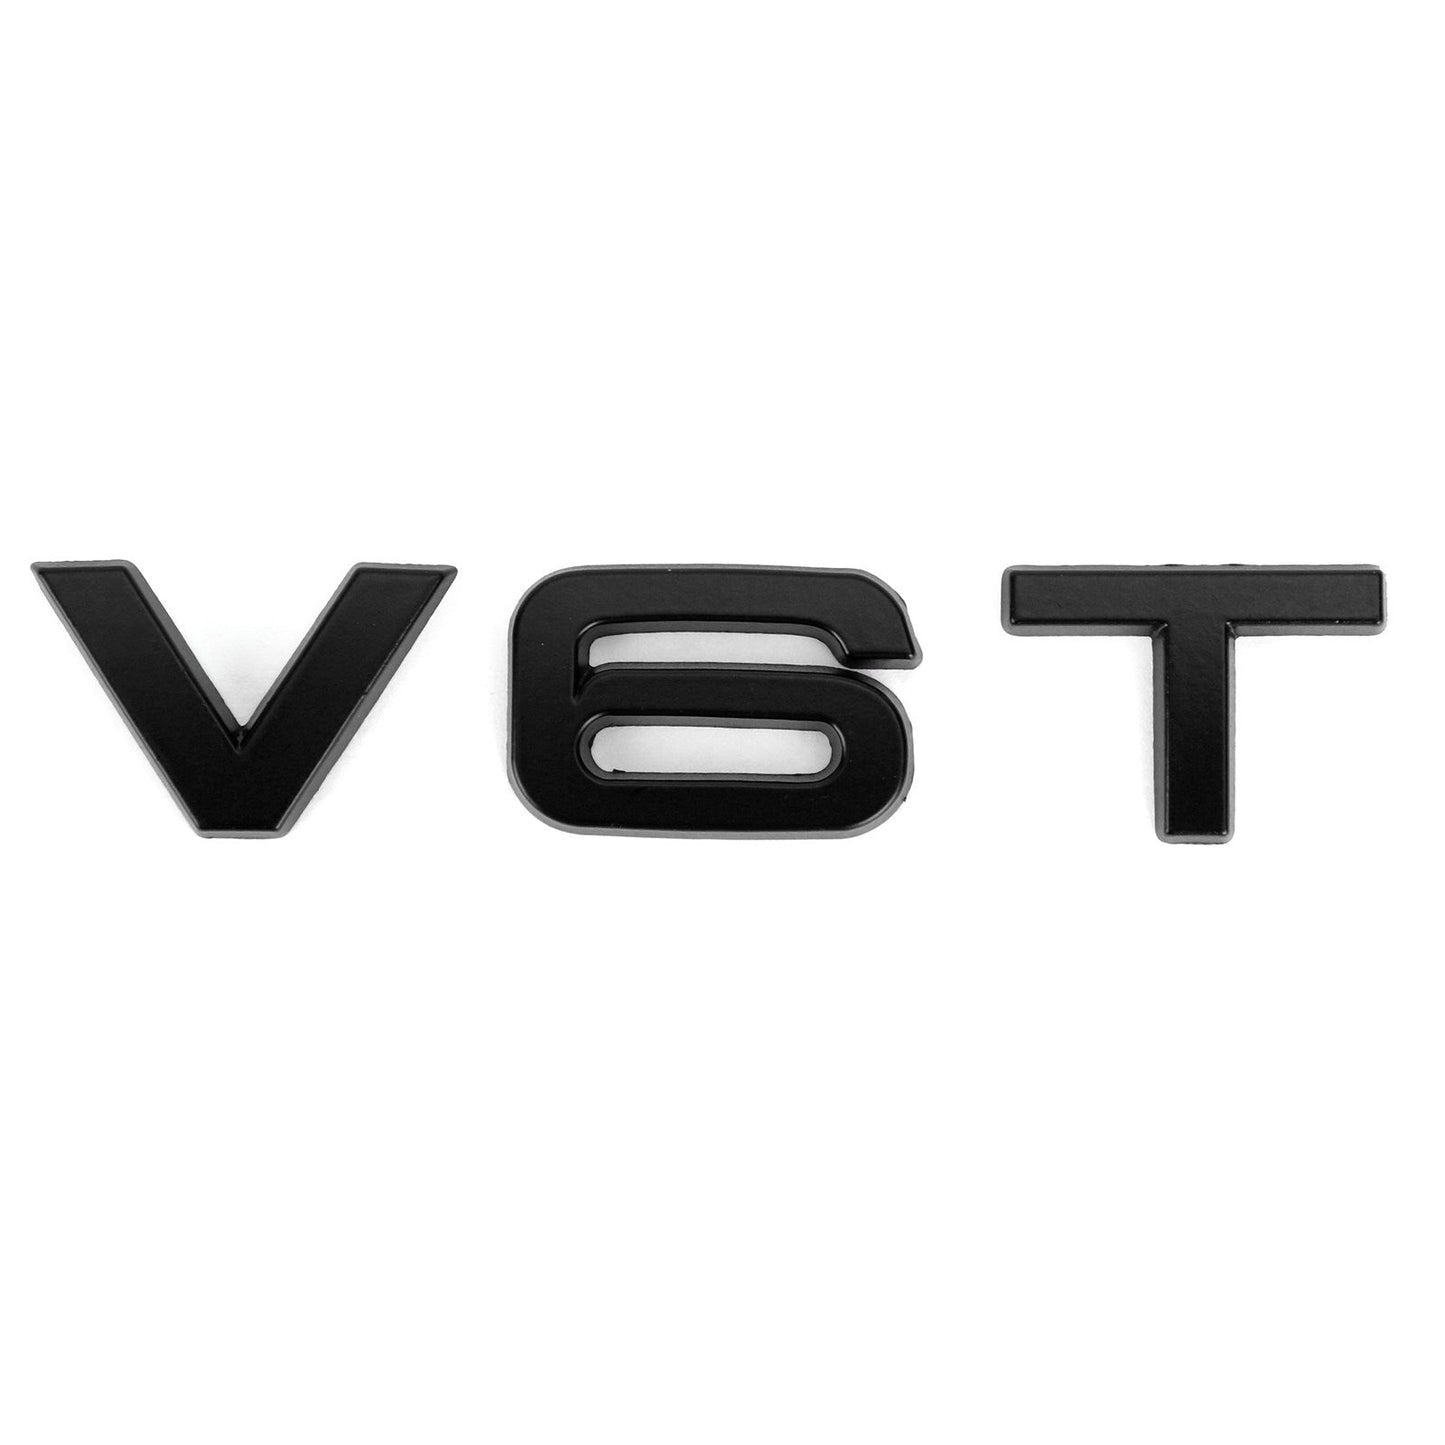 V6T Emblem Badge Fit For AUDI A1 A3 A4 A5 A6 A7 Q3 Q5 Q7 S6 S7 S8 S4 SQ5 Black